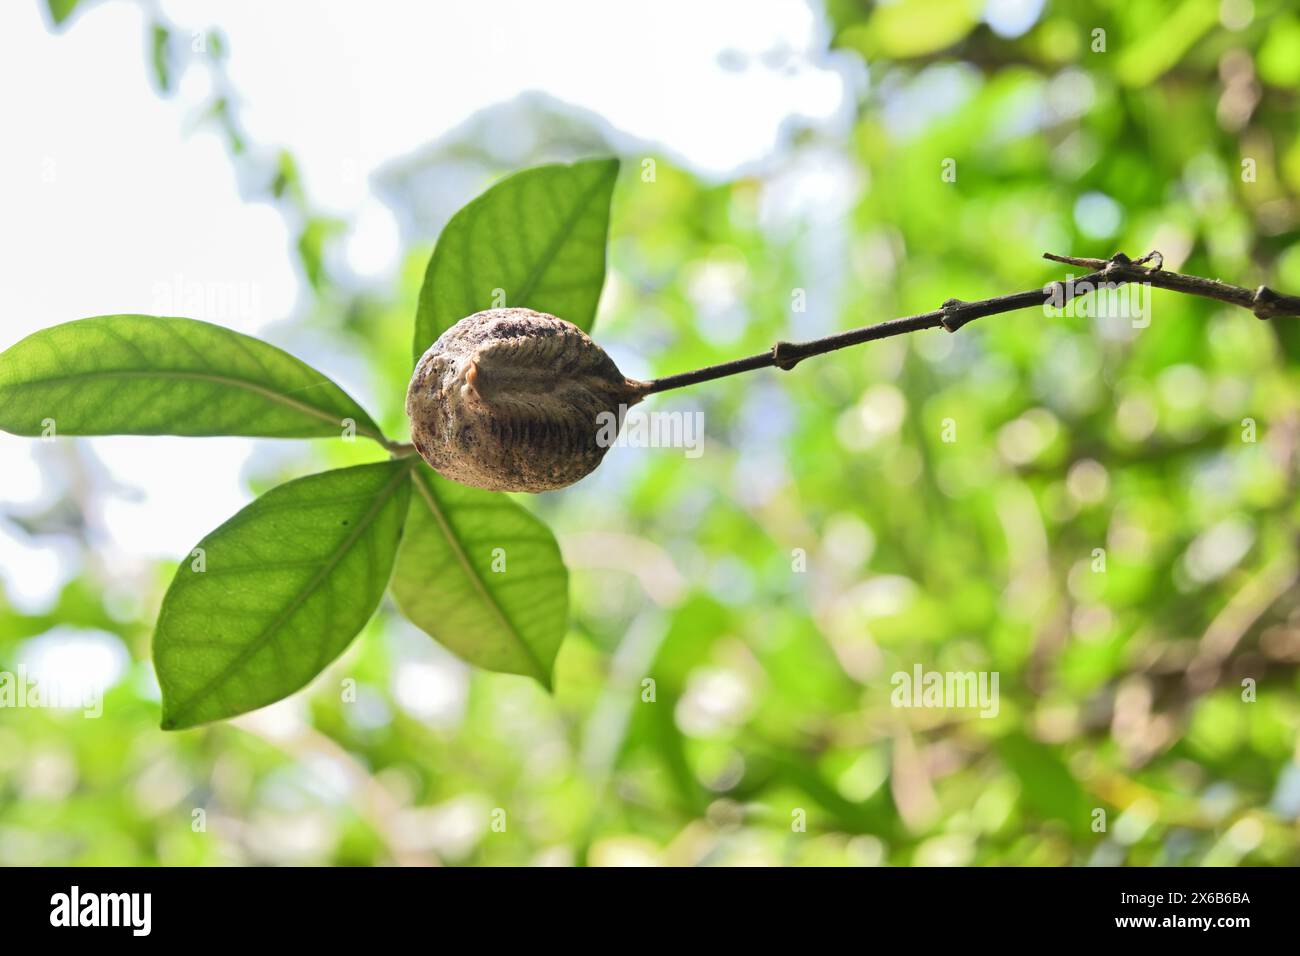 Die Eikapsel einer Mantis, die an einem kleinen Pflanzenstamm befestigt ist, ist von unten zu sehen Stockfoto